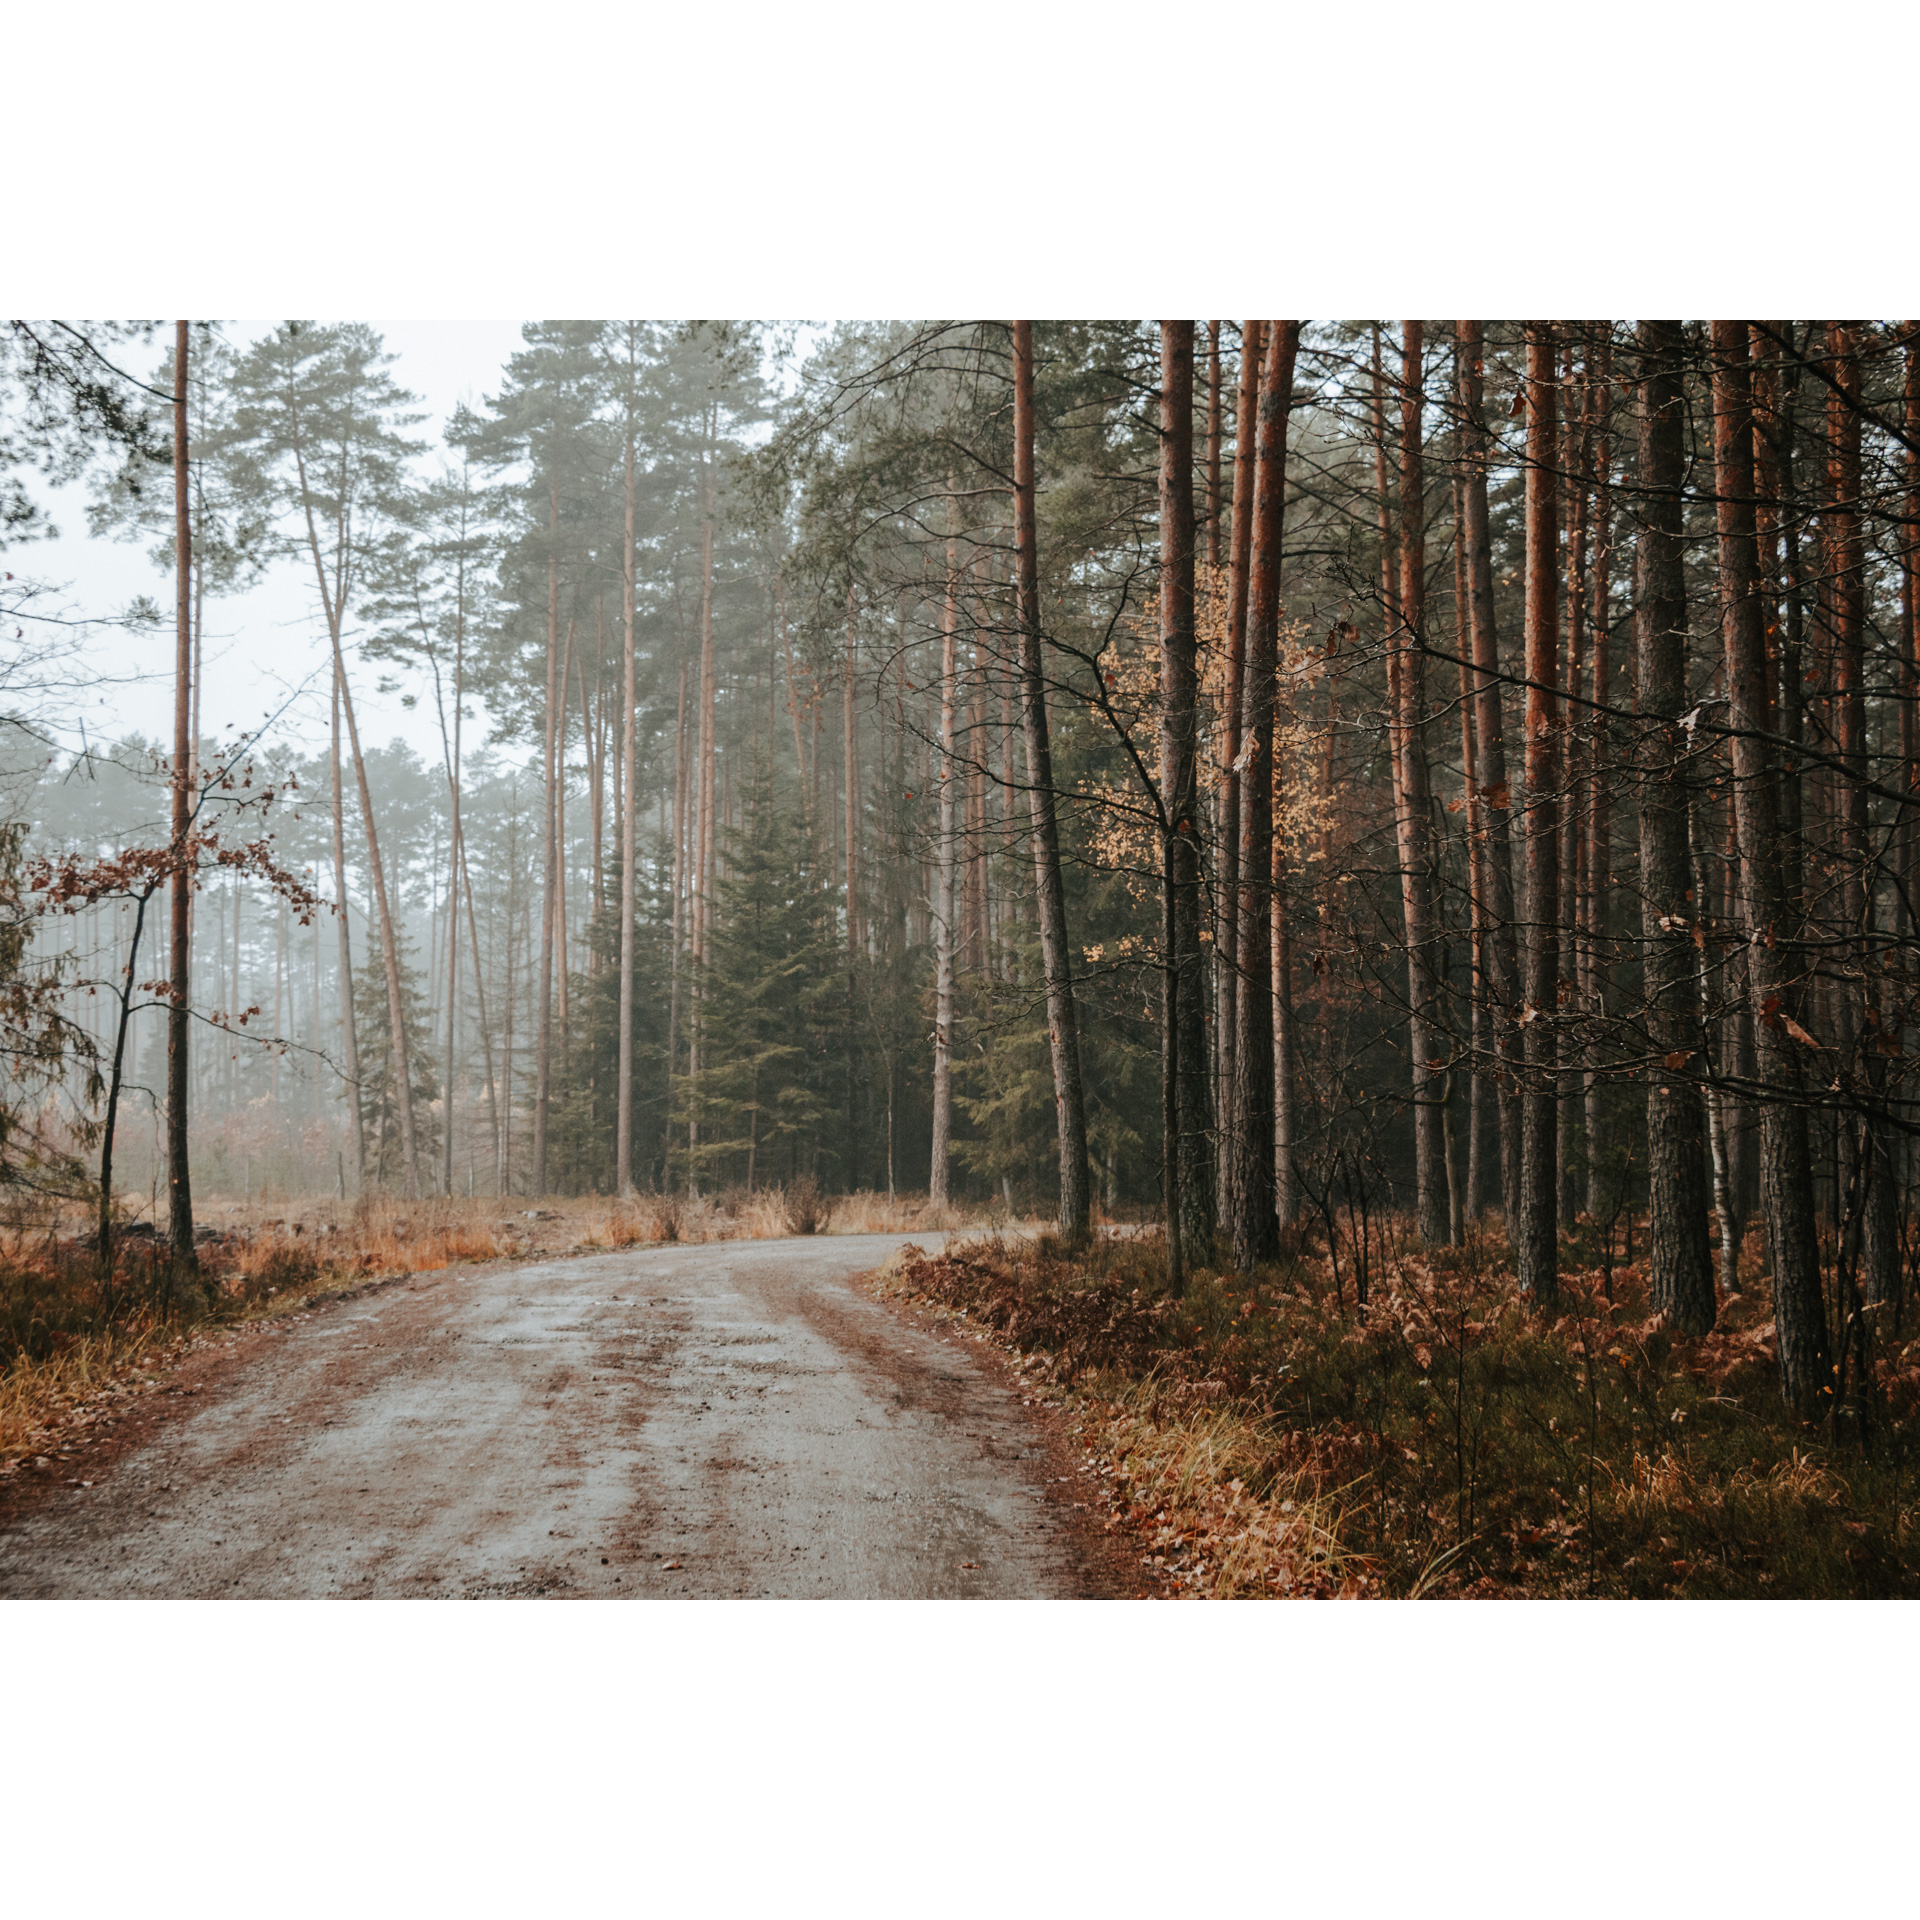 Piaszczysta droga prowadząca przez las, dookoła wysokie drzewa w brązowych barwach, w tle mgła